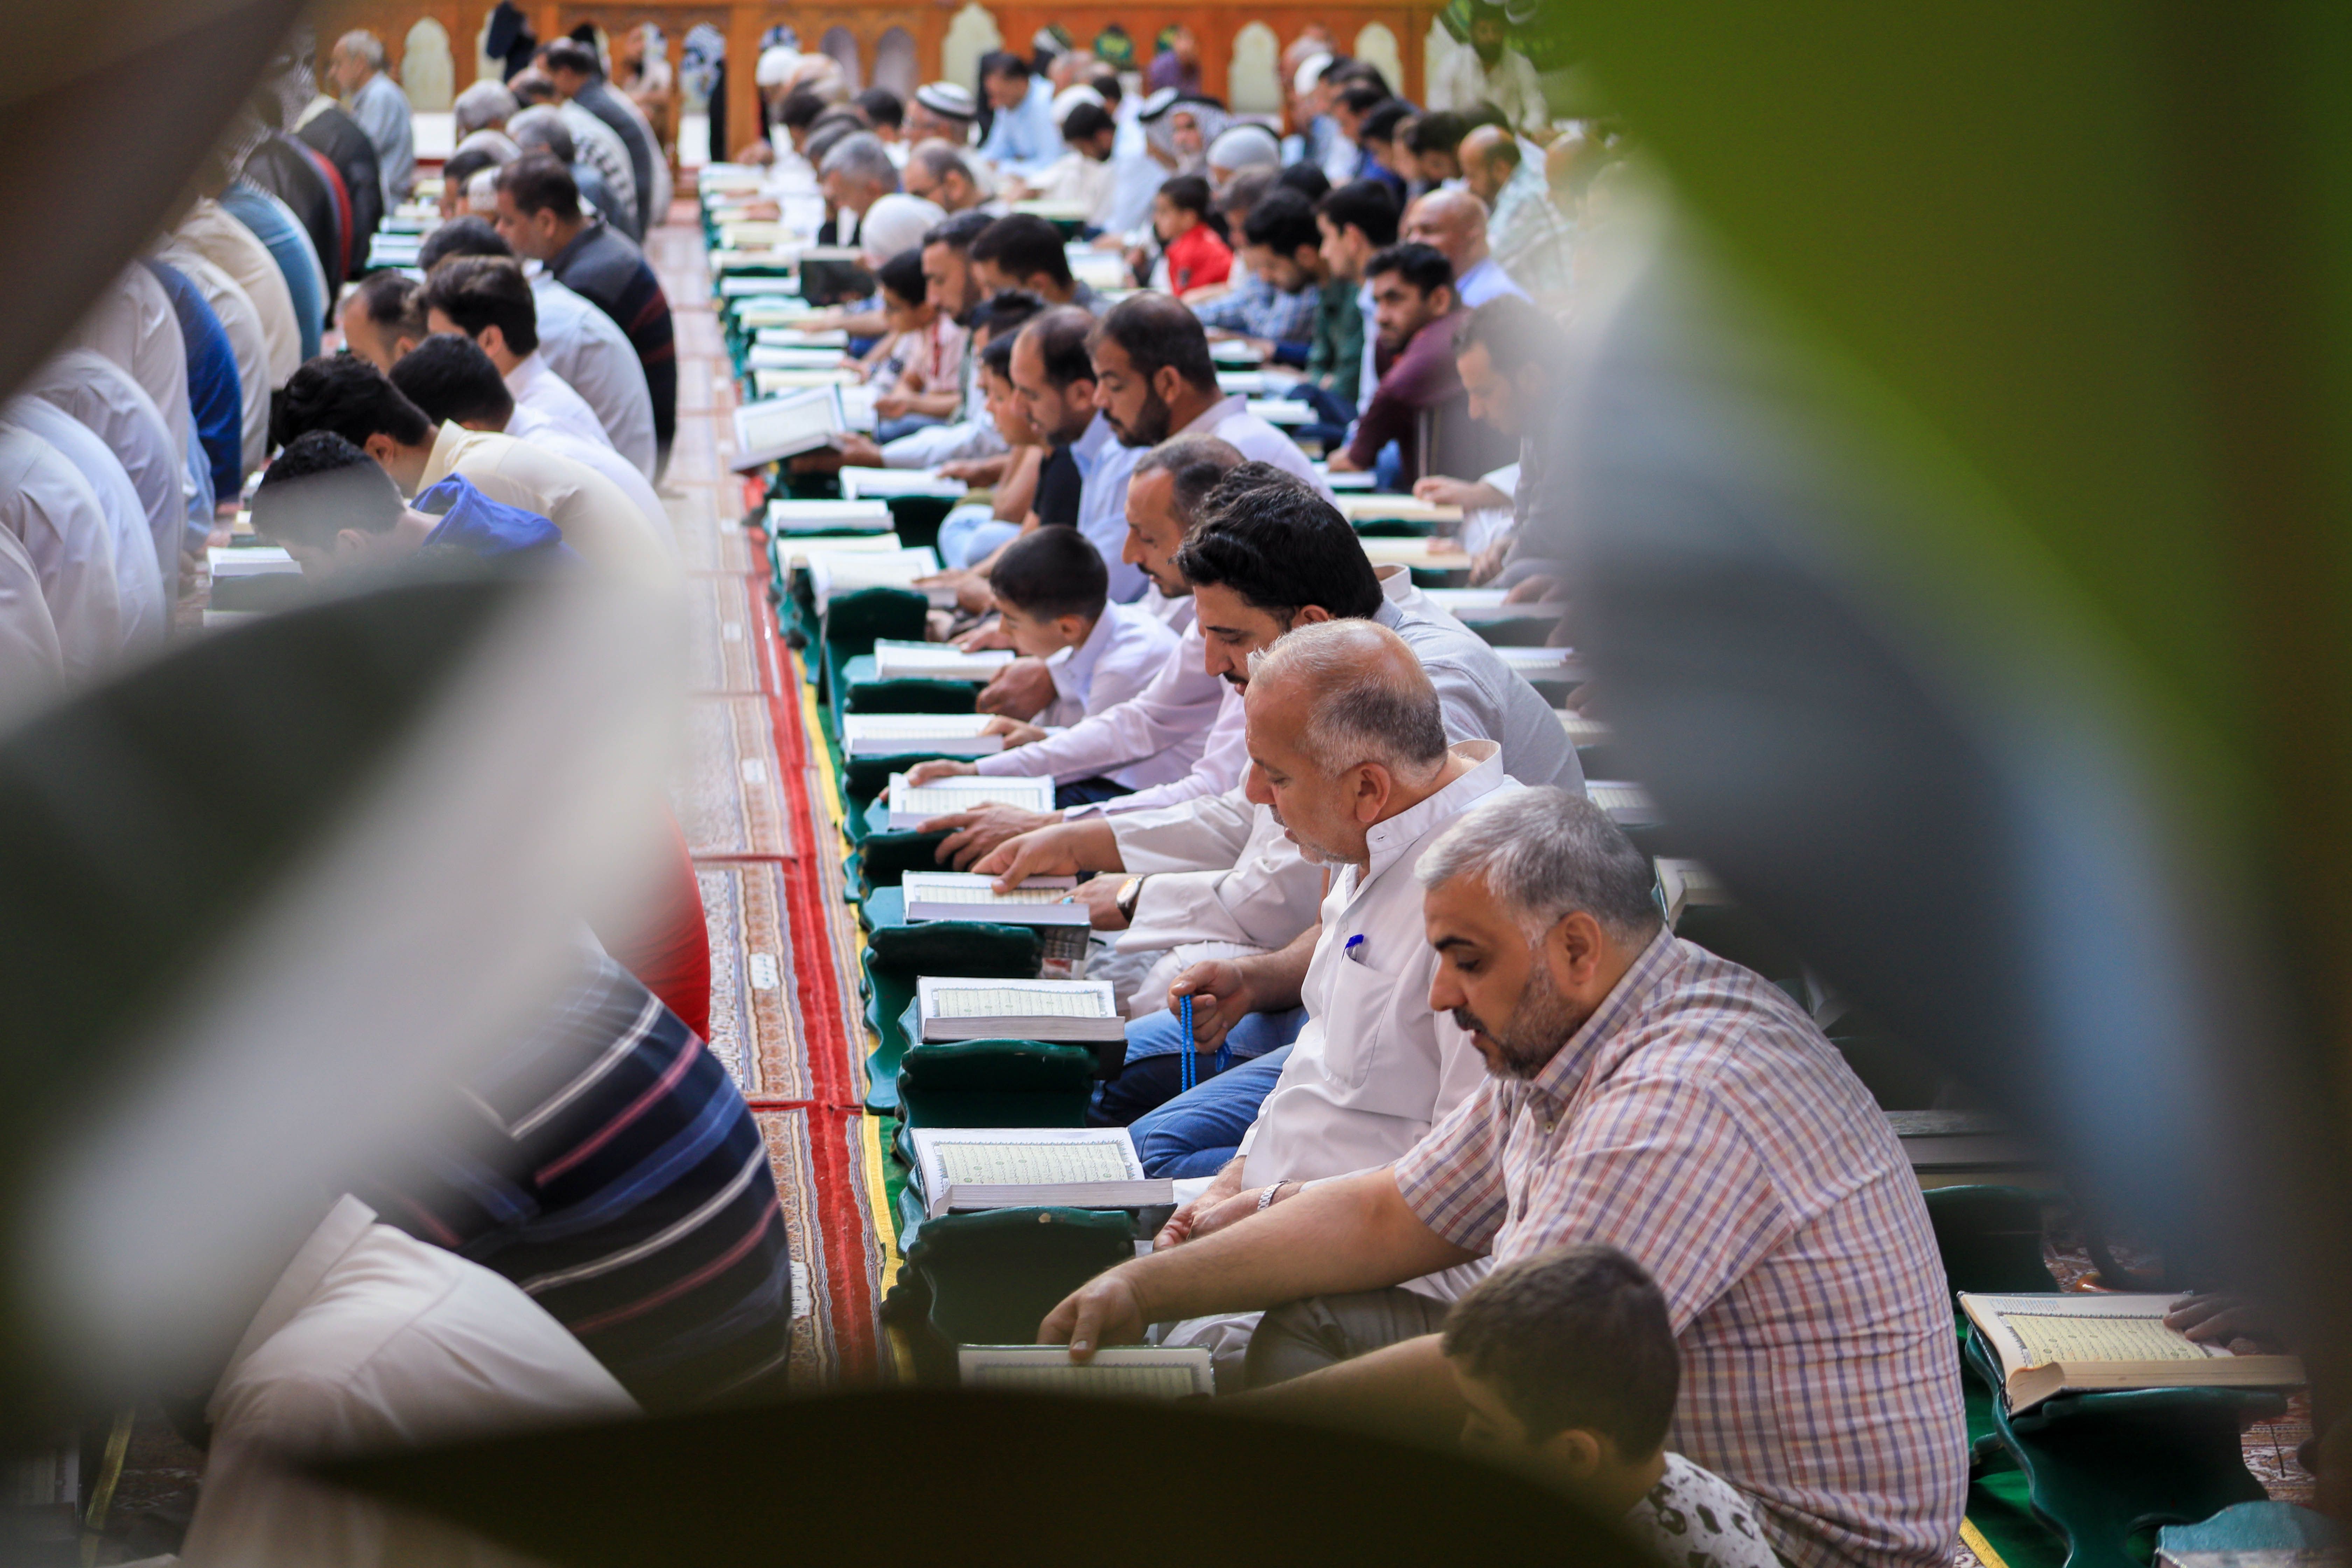 جانب من اليوم الثاني للختمة القرآنية الرمضانية المرتلة في الصحن العباسي الشريف التي يقيمها معهد القرآن الكريم